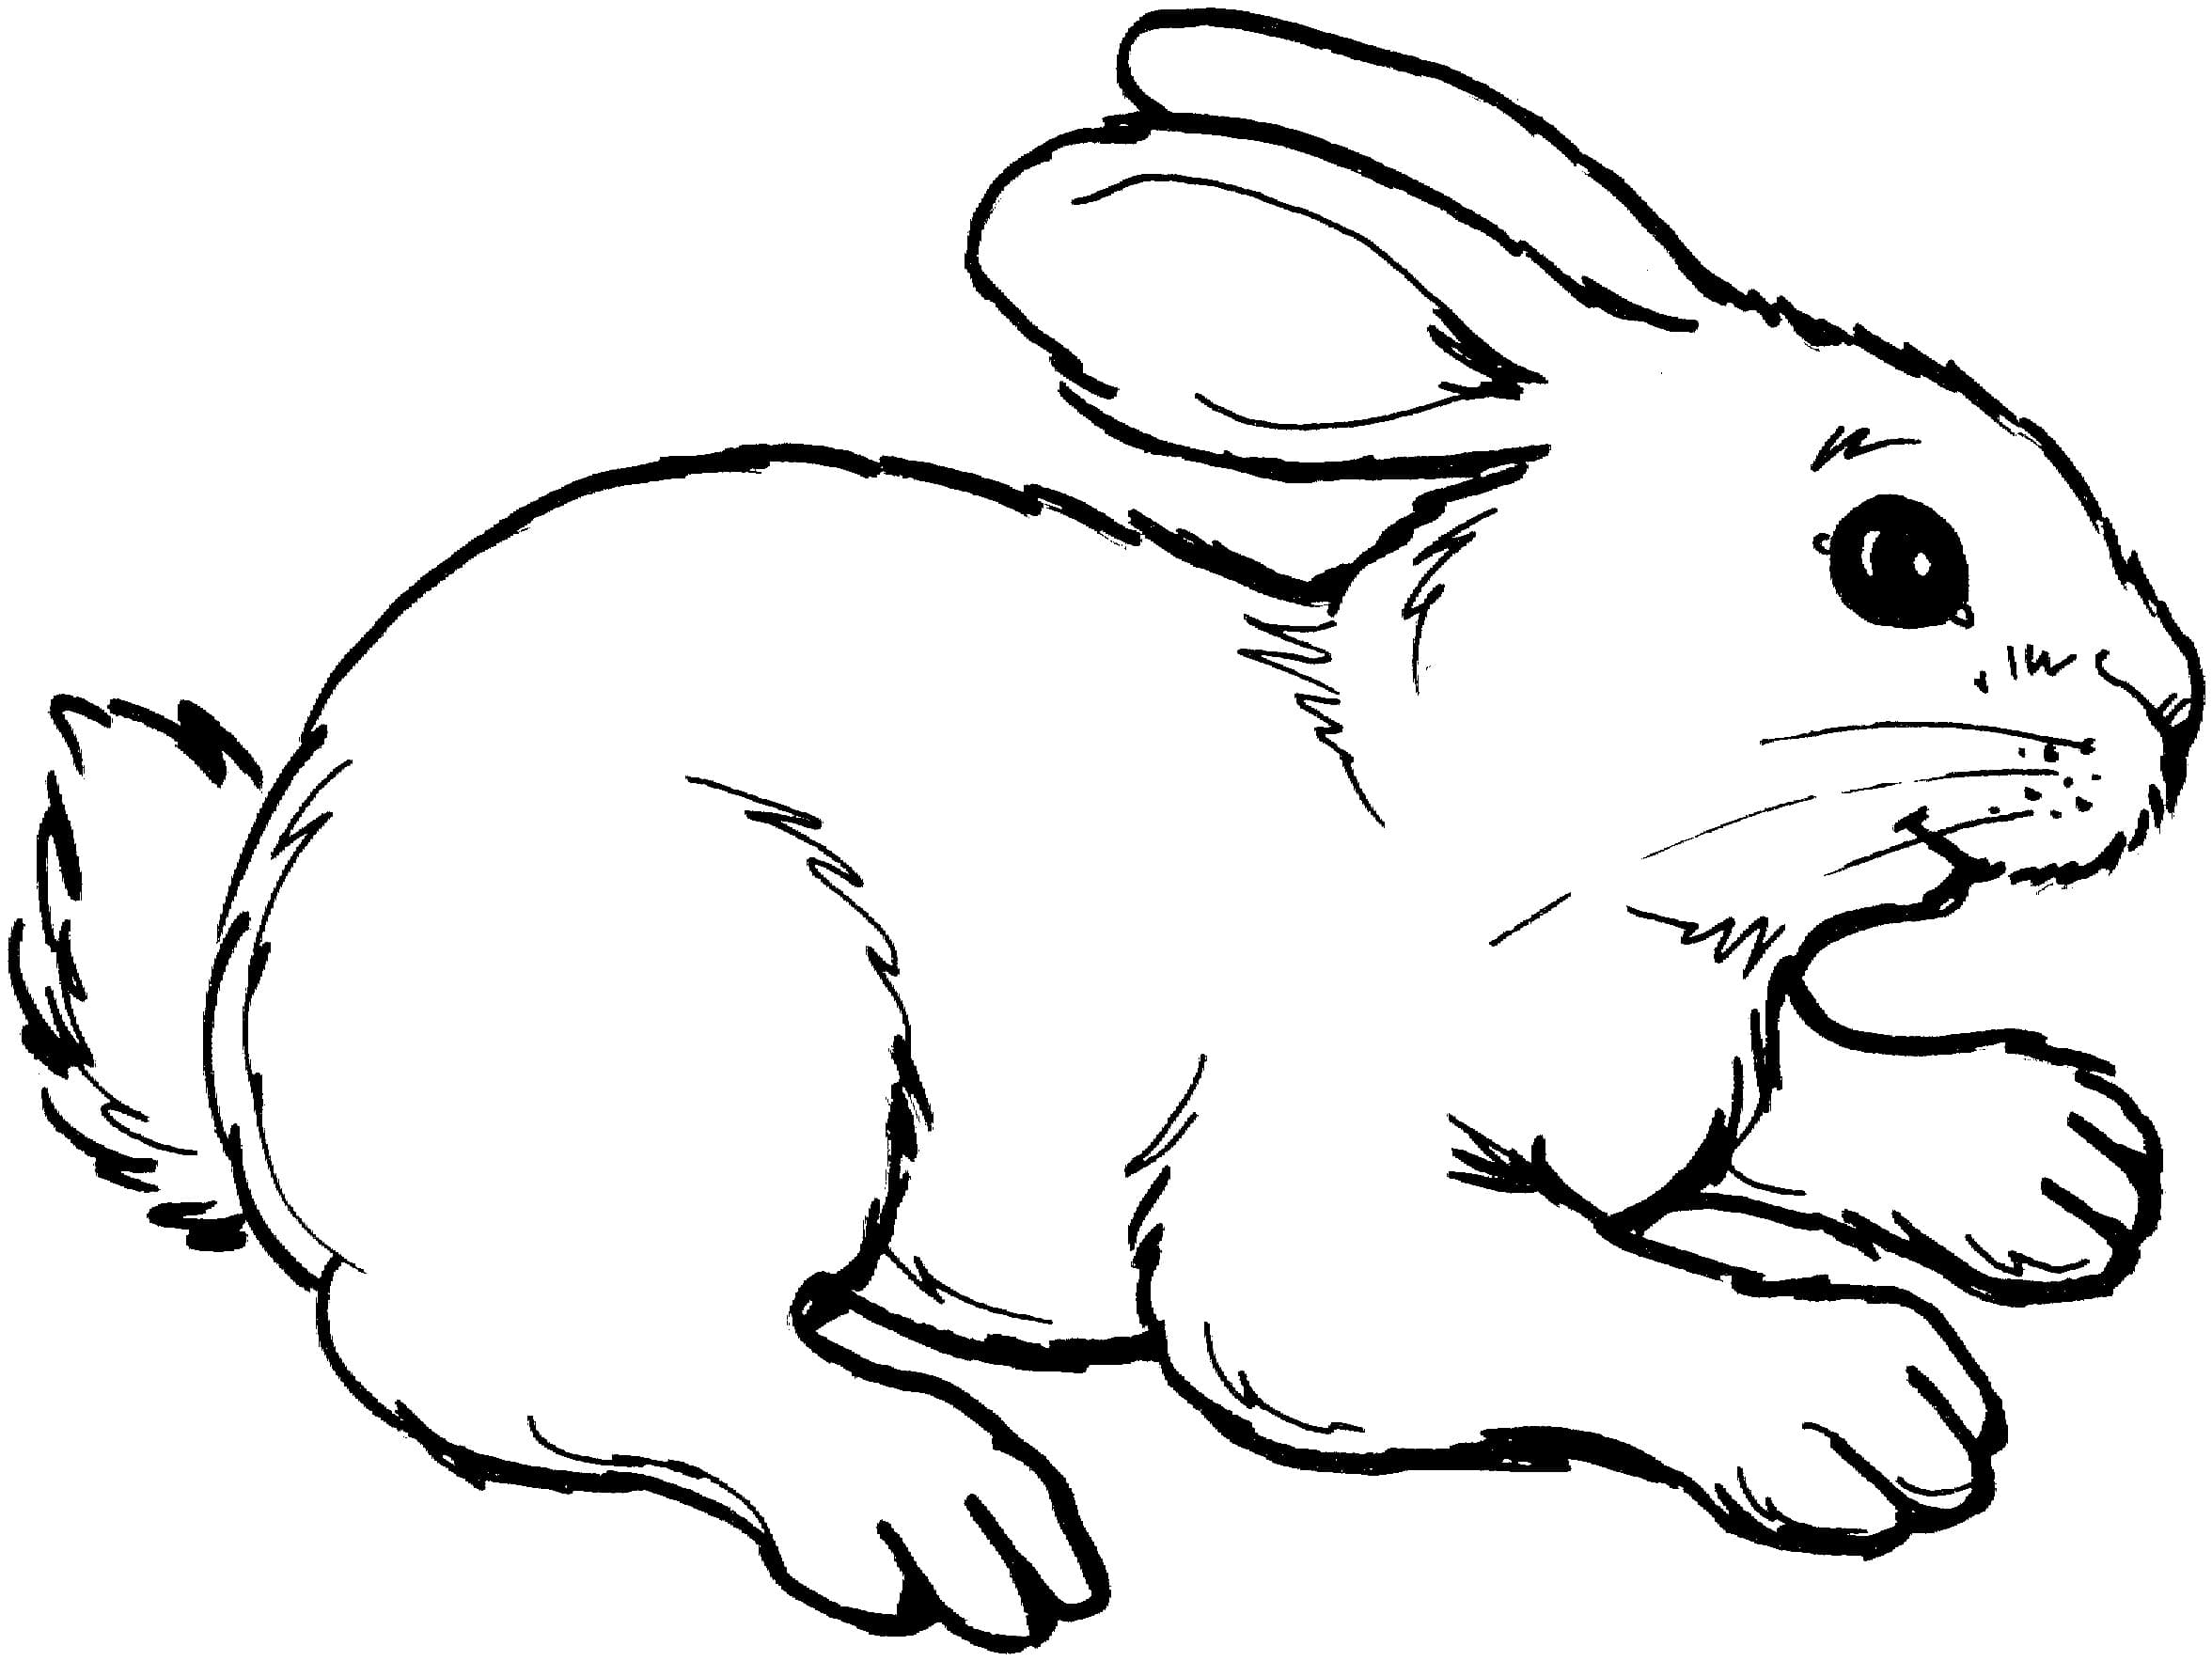 Рисунки с символом 2023 года - Кроликом для детей